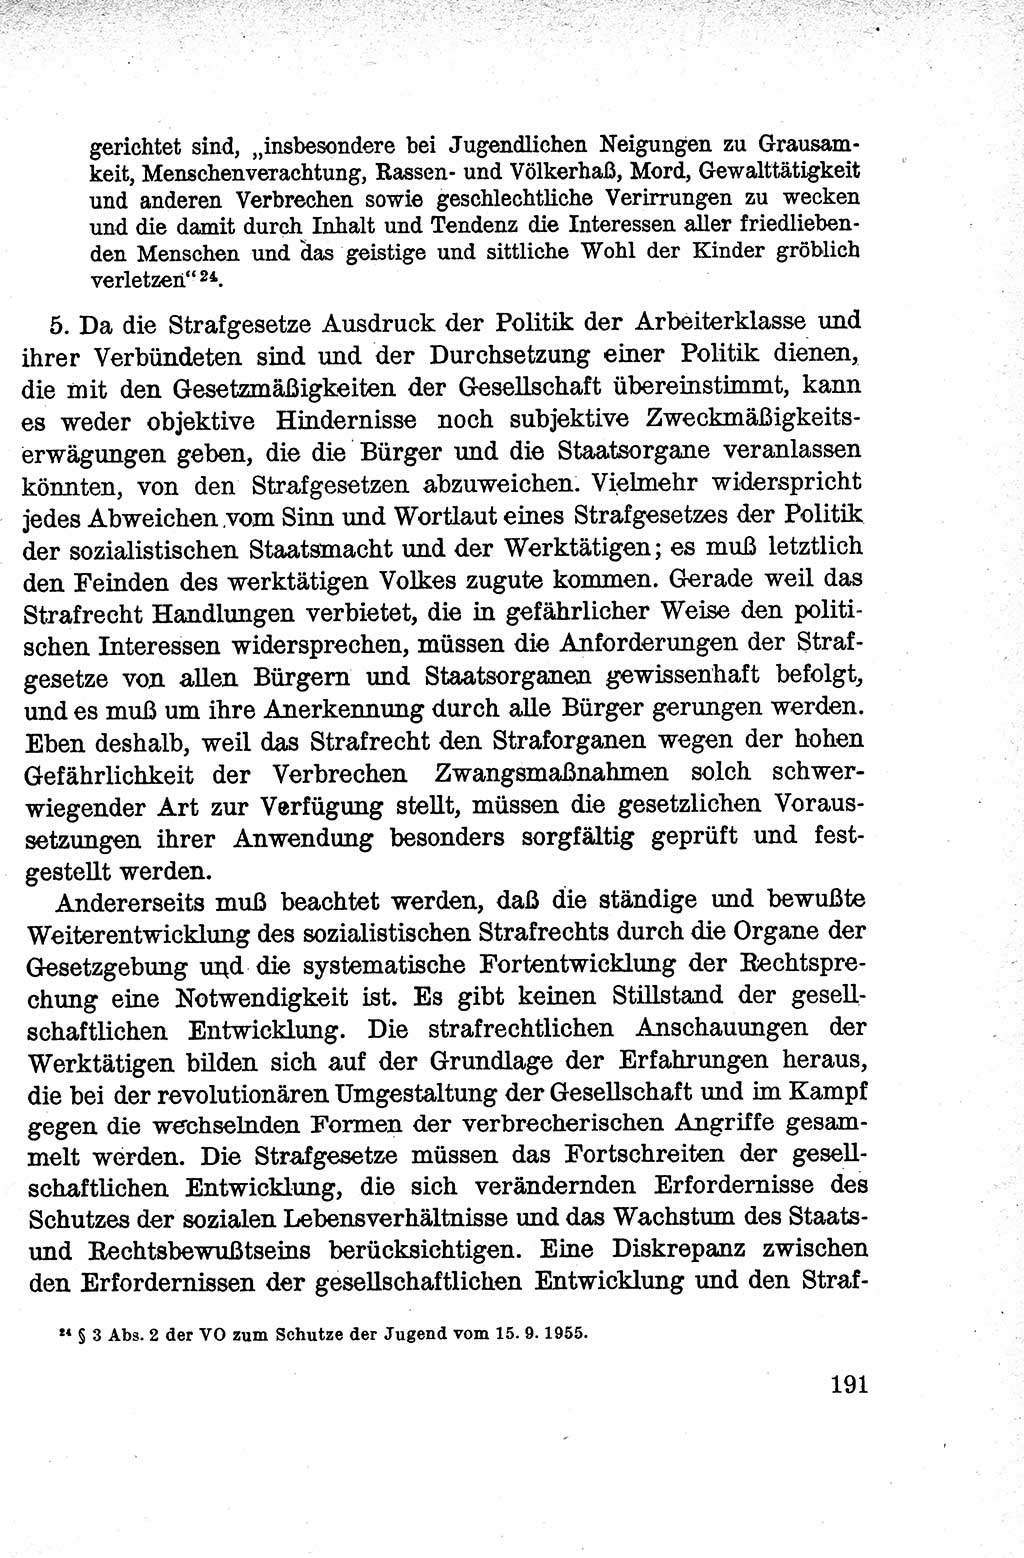 Lehrbuch des Strafrechts der Deutschen Demokratischen Republik (DDR), Allgemeiner Teil 1959, Seite 191 (Lb. Strafr. DDR AT 1959, S. 191)